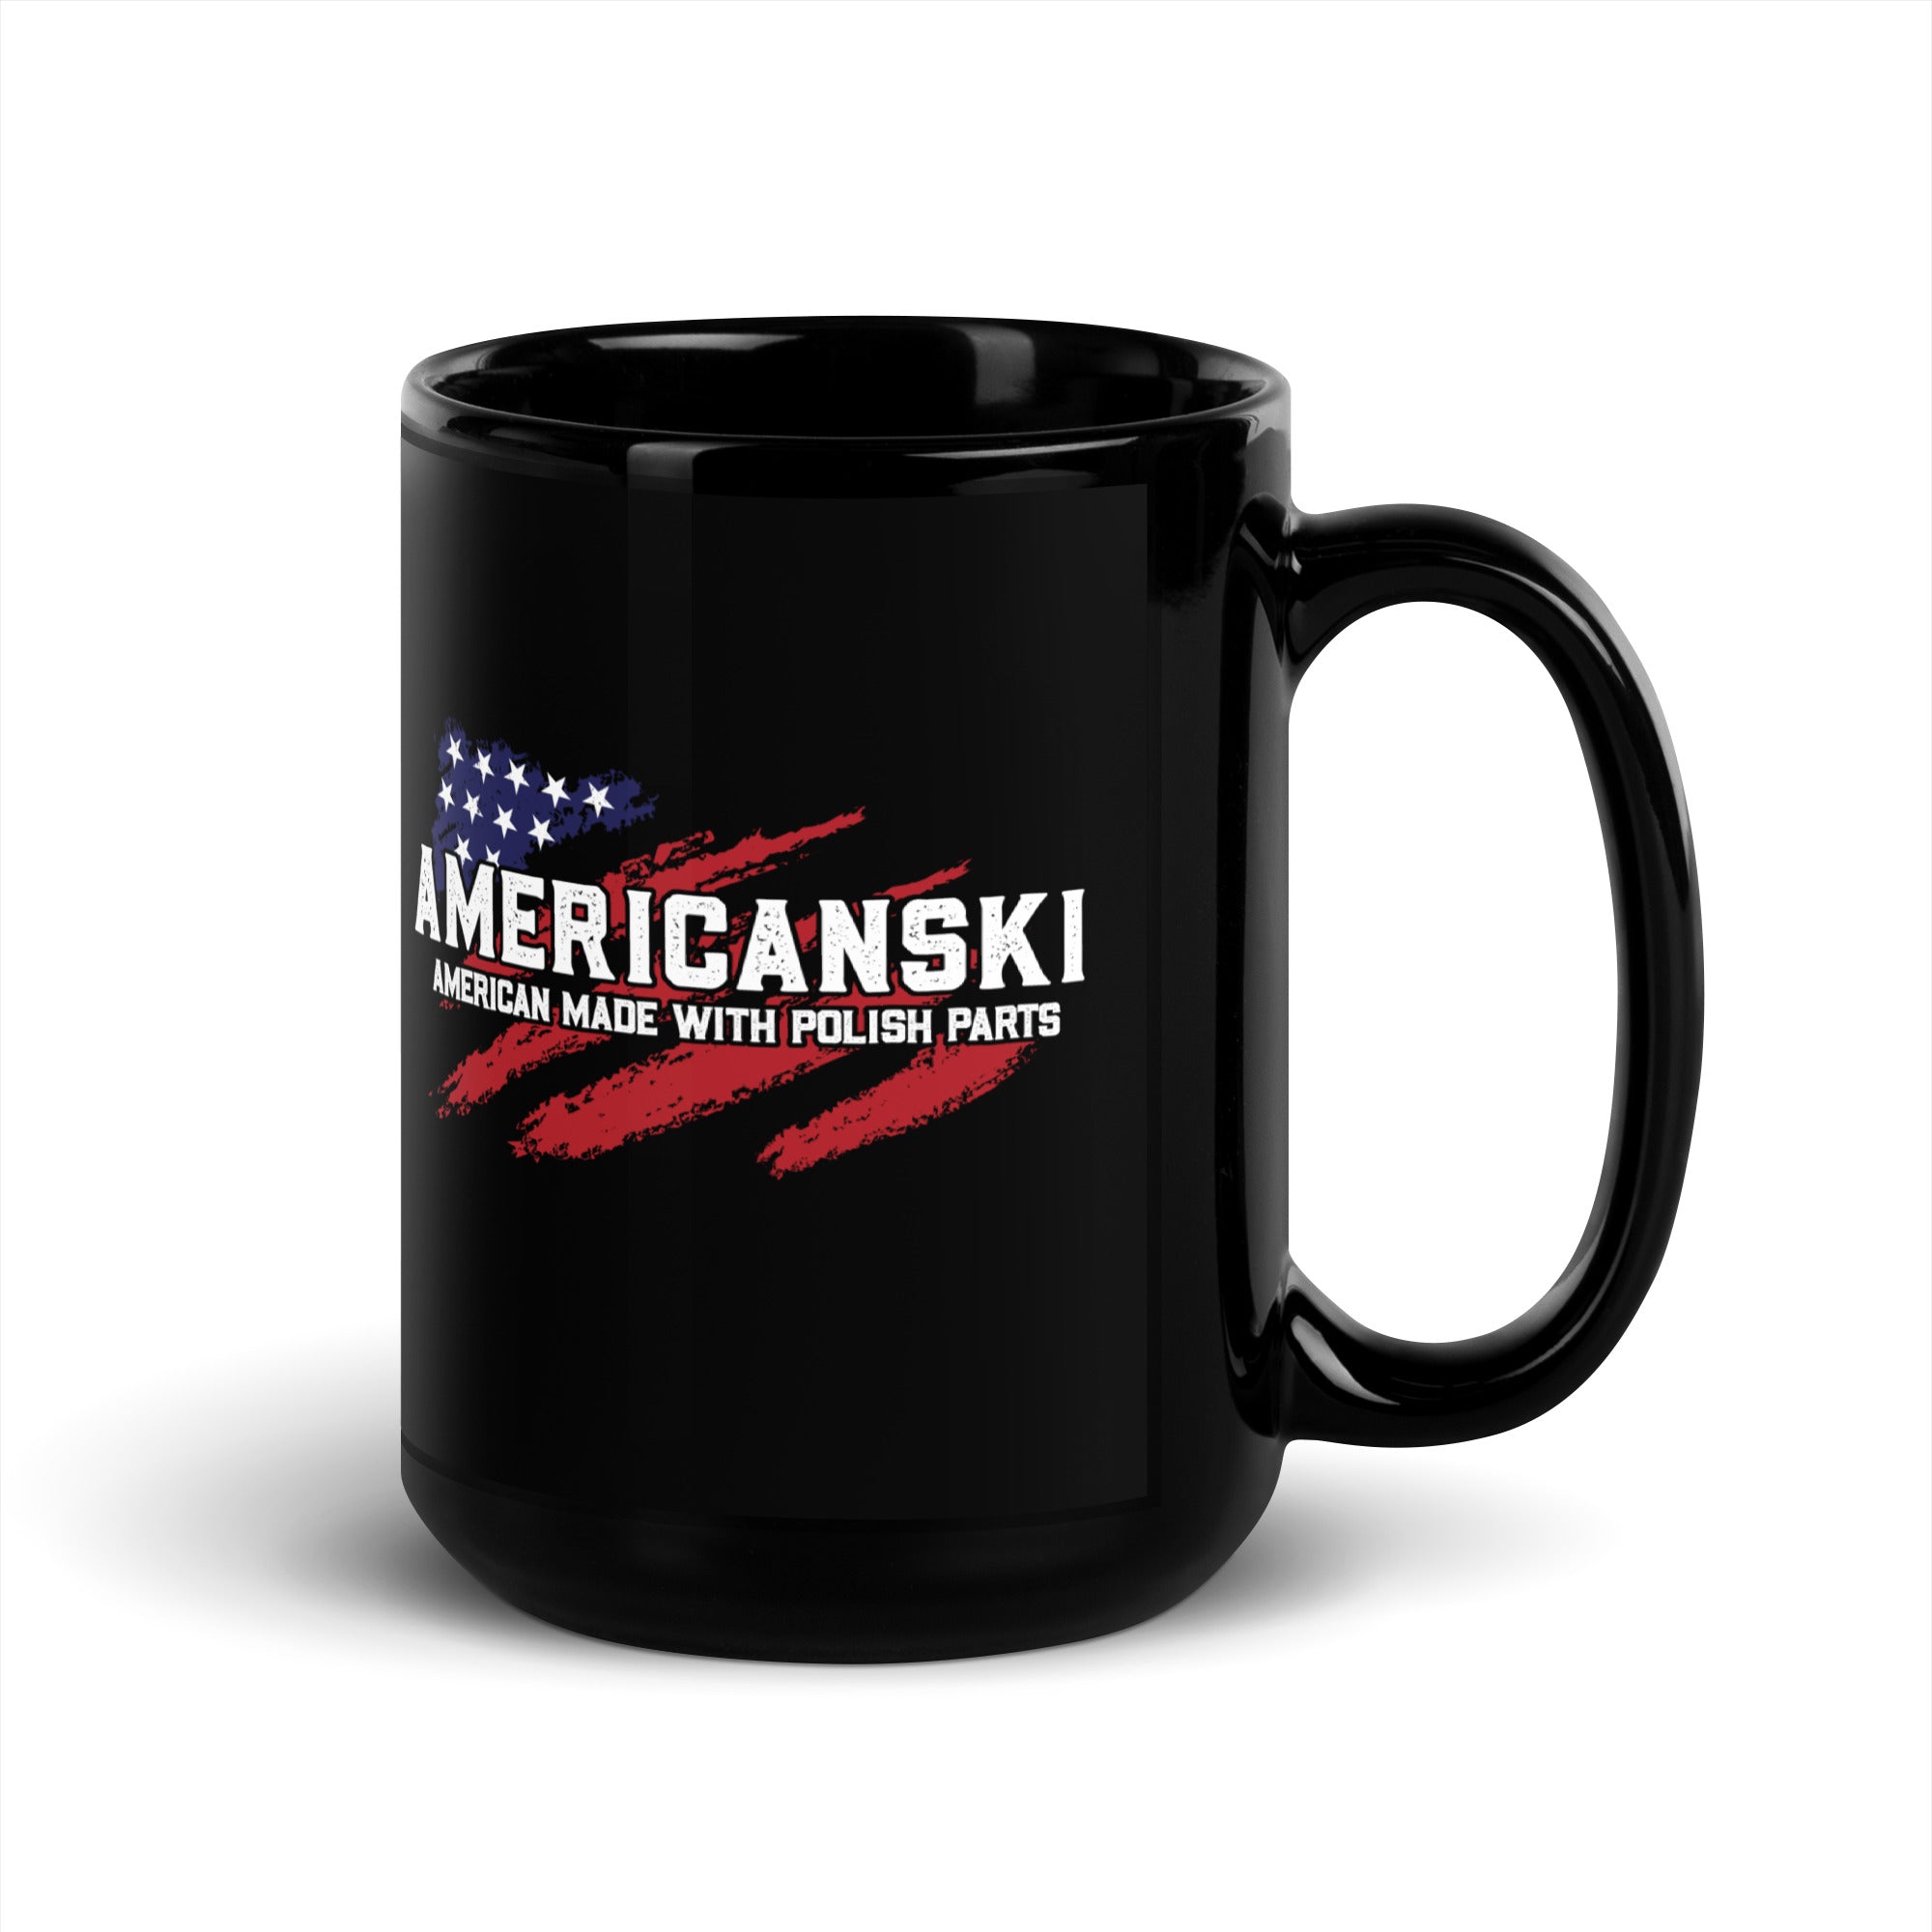 Americanski Black Glossy Mug  Polish Shirt Store   